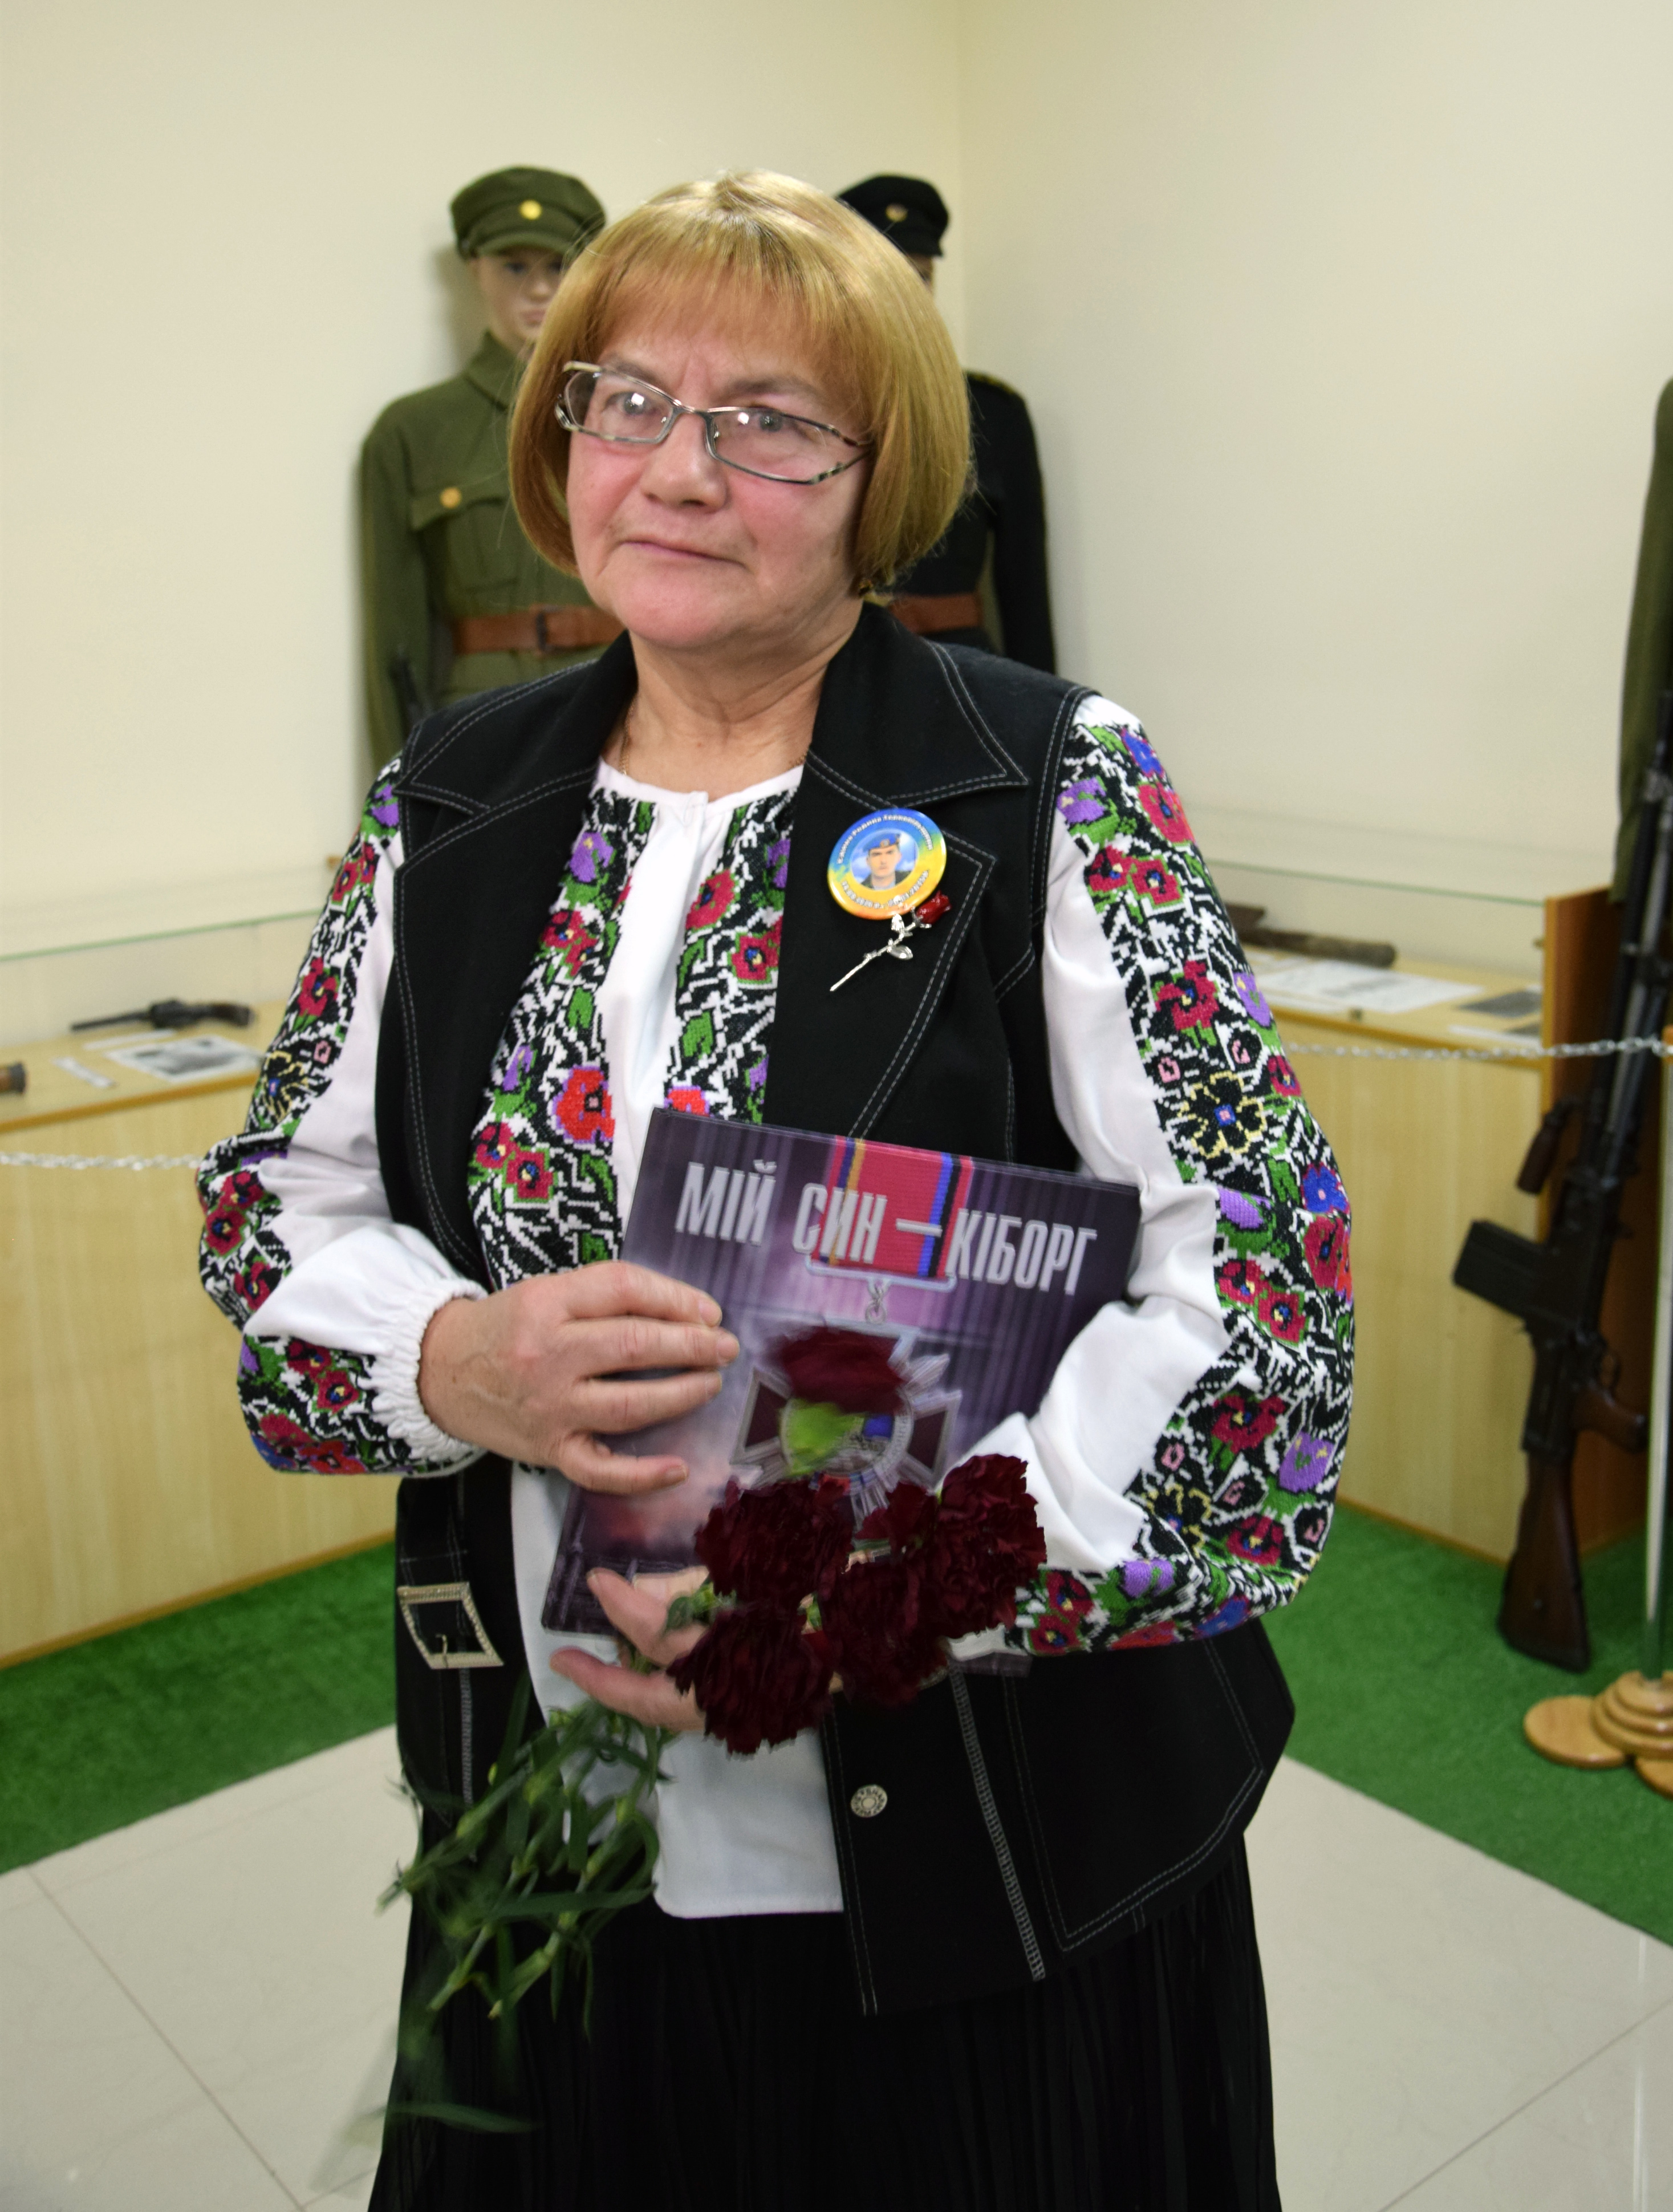 Мати Героя Марія Вітишин із книжкою «Мій син — кіборг». Фото автора